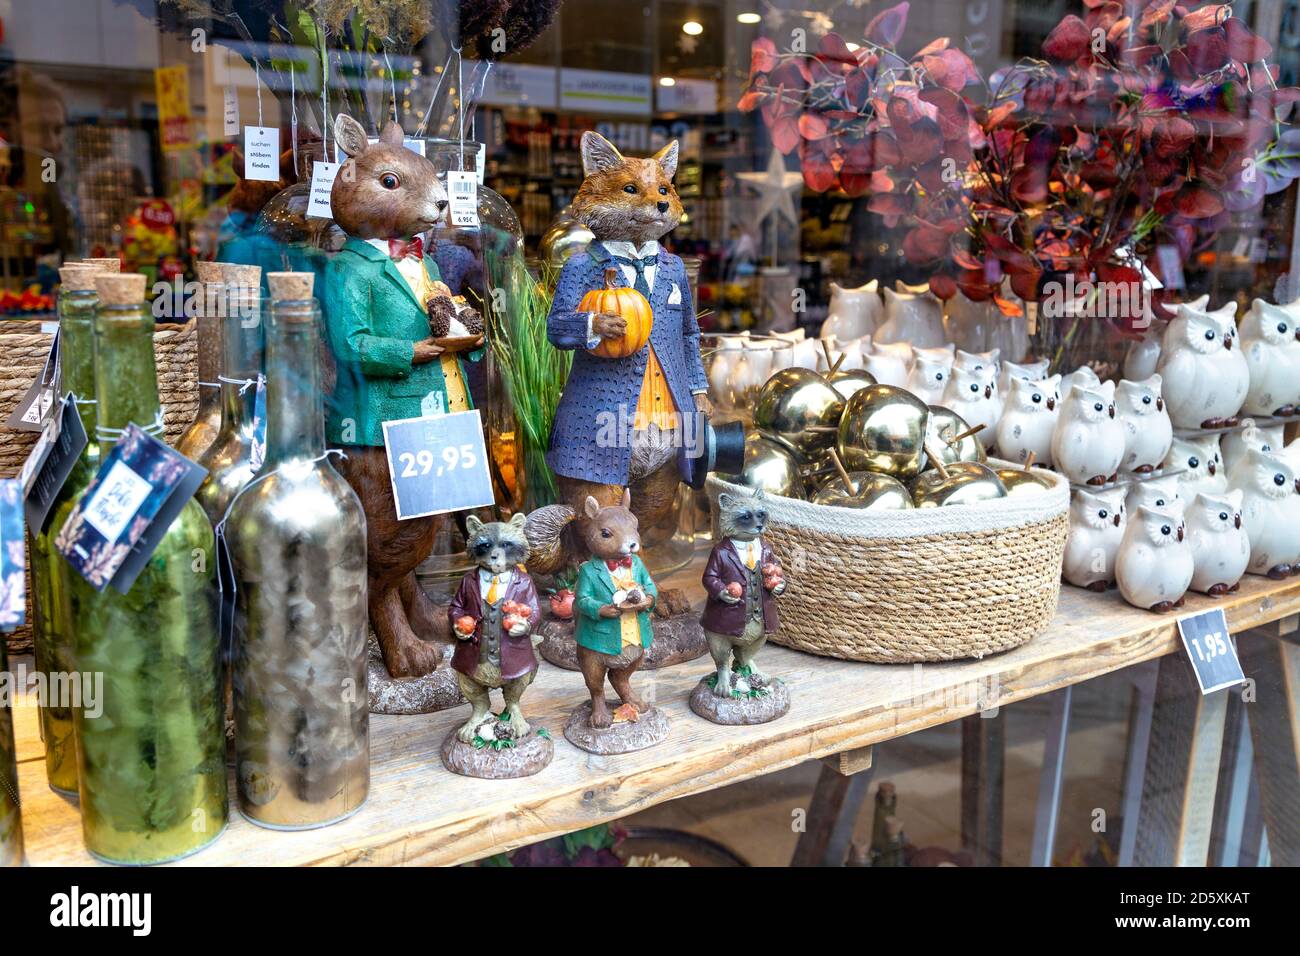 Boutique vitrine avec ornements et figurines à Nanu-Nana à Brême, Allemagne Banque D'Images